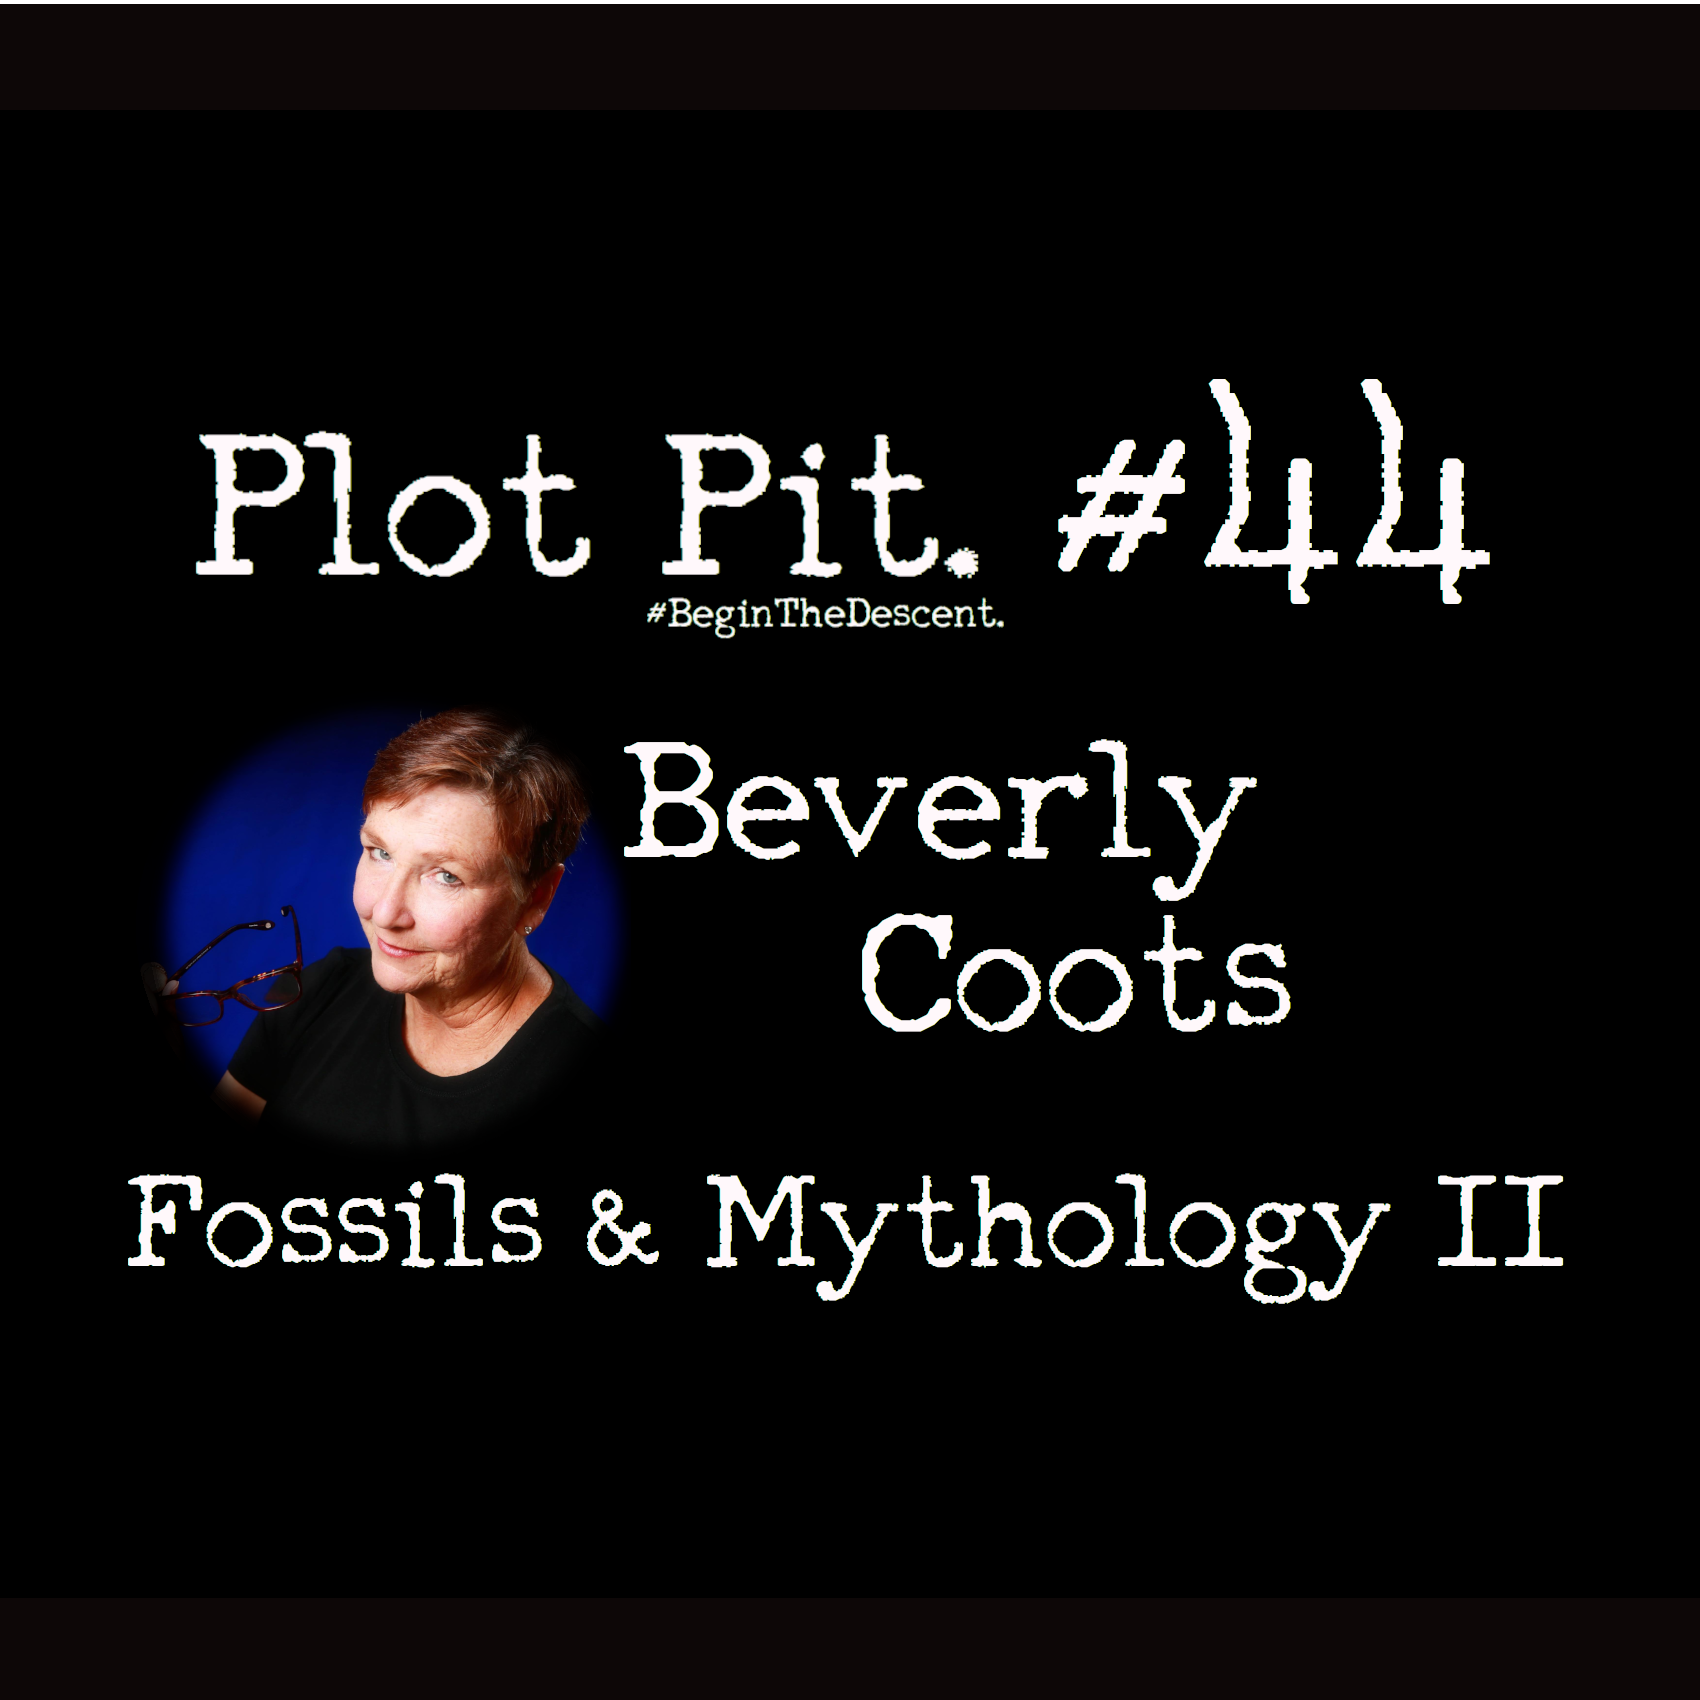 Fossils & Mythology Part II